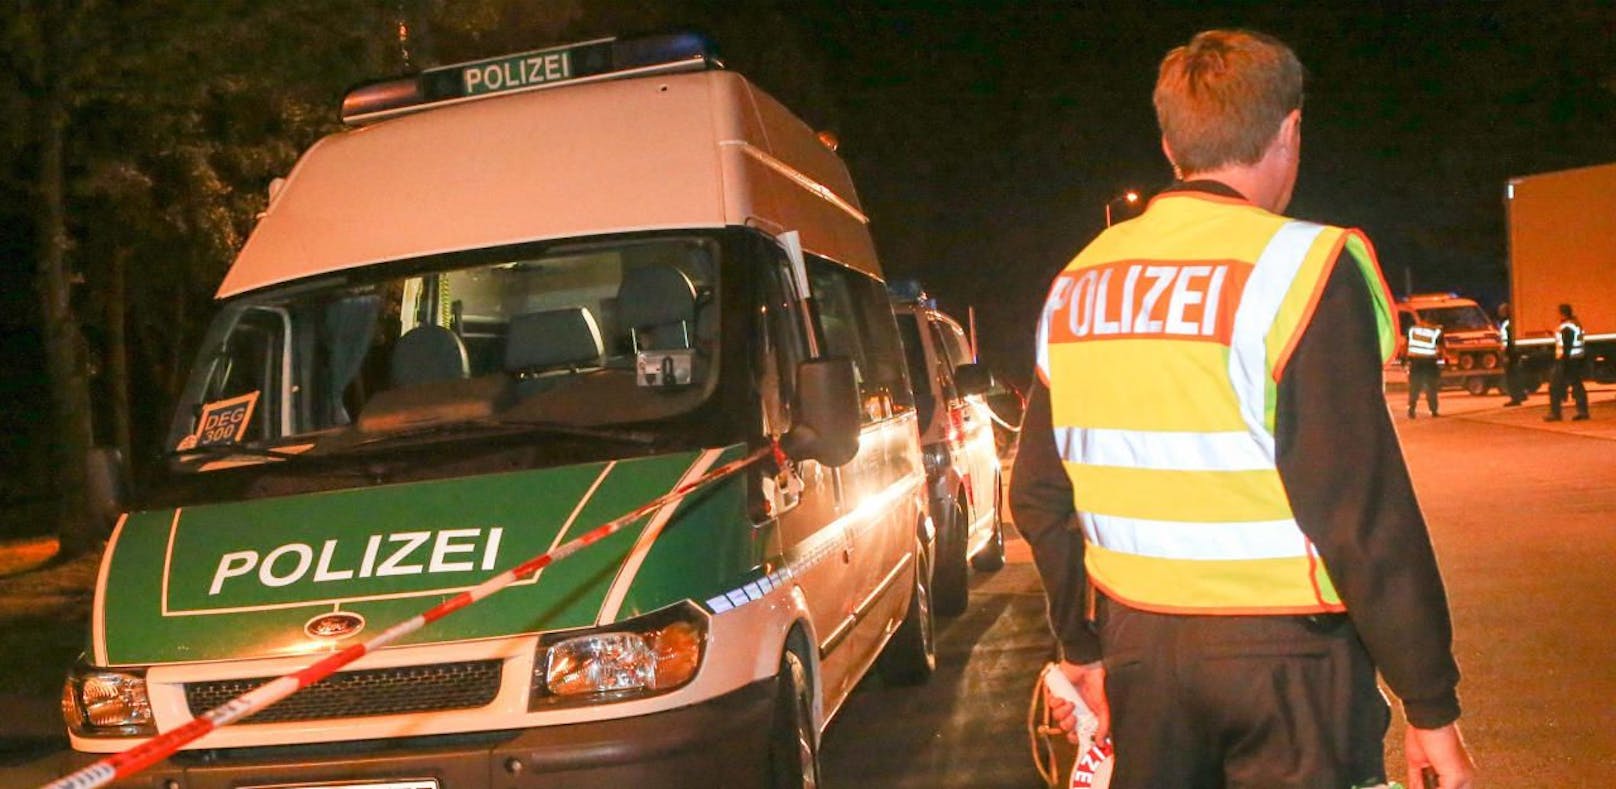 Laut einem Gutachten ist der Einsatz der bayerischen Grenzpolizei verfassungswidrig.